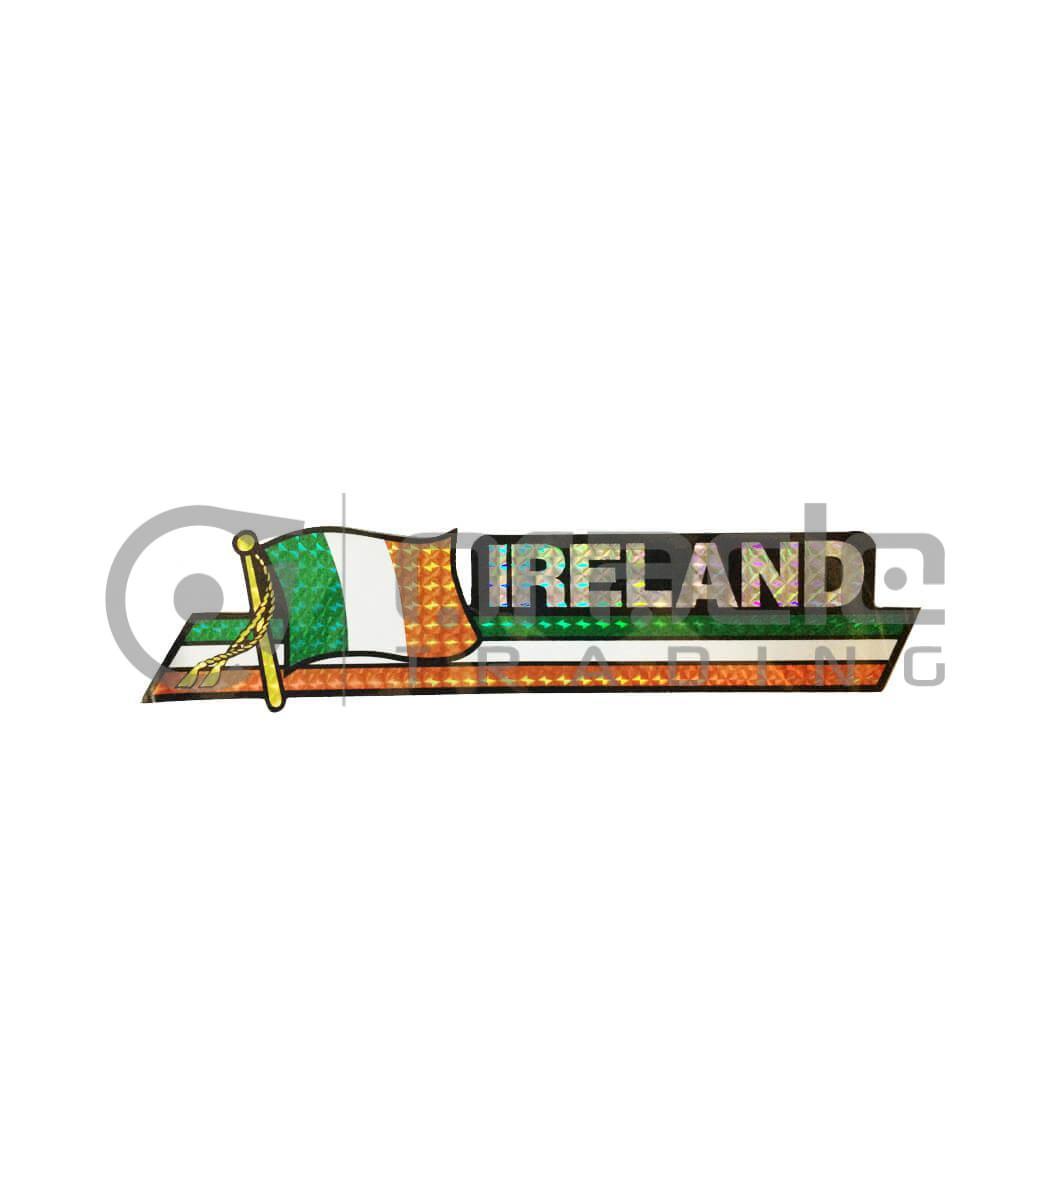 Ireland Long Bumper Sticker